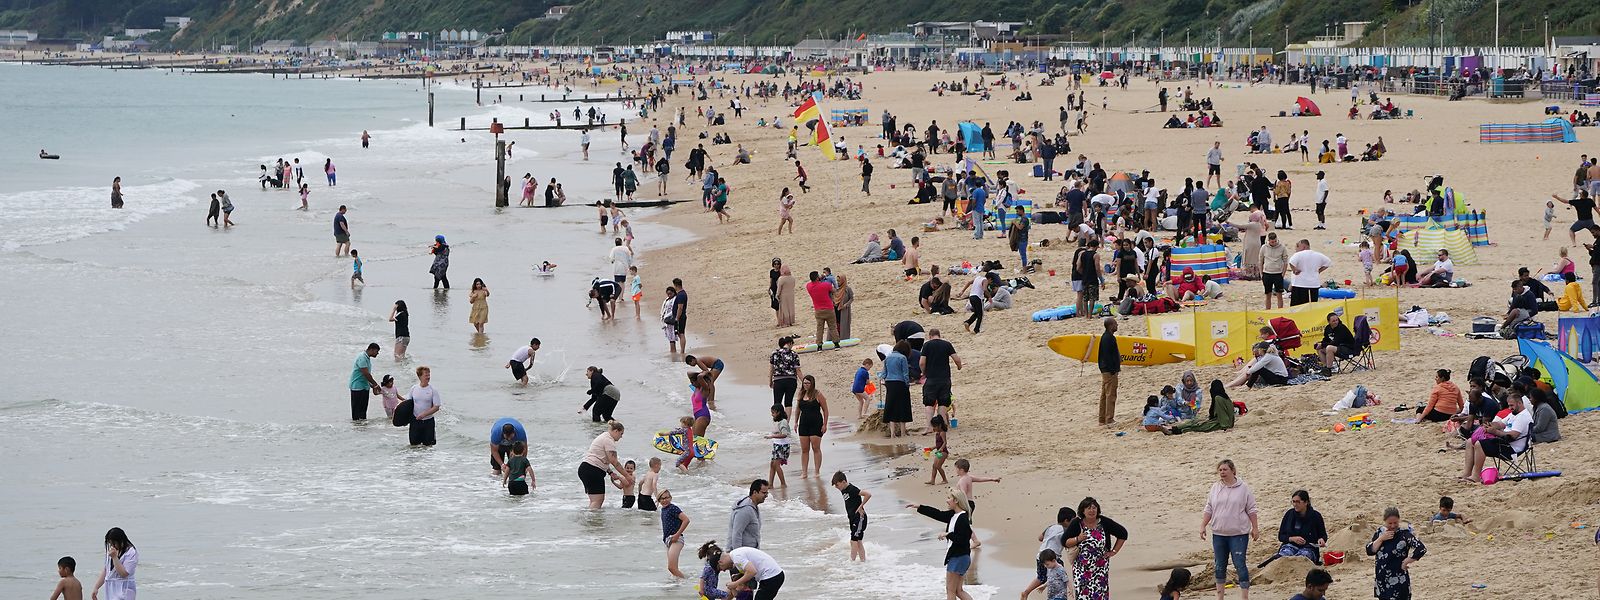 Menschen genießen das Wetter am Strand von Bournemouth im Süden Englands. Die Pandemie ist gefühlt sehr weit weg.